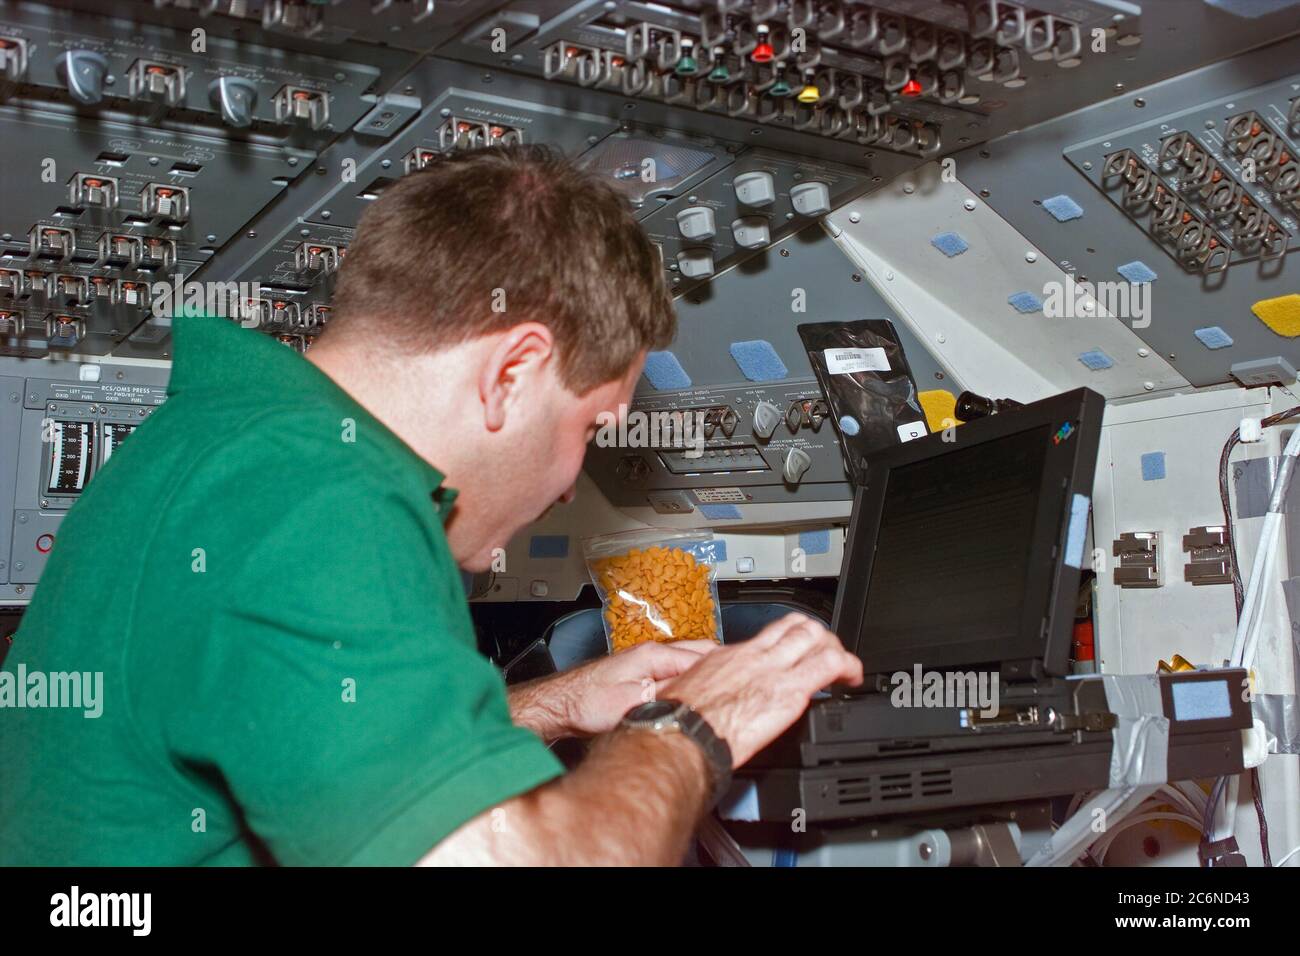 (12 gennaio 1997) --- a bordo dello Space Shuttle Atlantis il suo primo giorno in orbita per la missione, l'astronauta John M. Grunsfeld, specialista della missione, inizia a inserire i dati della missione su un computer per uso generale a giro. Grunsfeld e cinque compagni di equipaggio stanno volando lo Spacehab Double Module (DM), pieno di forniture per l'equipaggio di tre persone a bordo della Stazione spaziale russa Mir con cui Atlantis attraccerà più tardi nella settimana. La scena è stata registrata con una fotocamera elettronica (ESC) e successivamente decollegata ai controllori di volo a Houston, Texas. Foto Stock